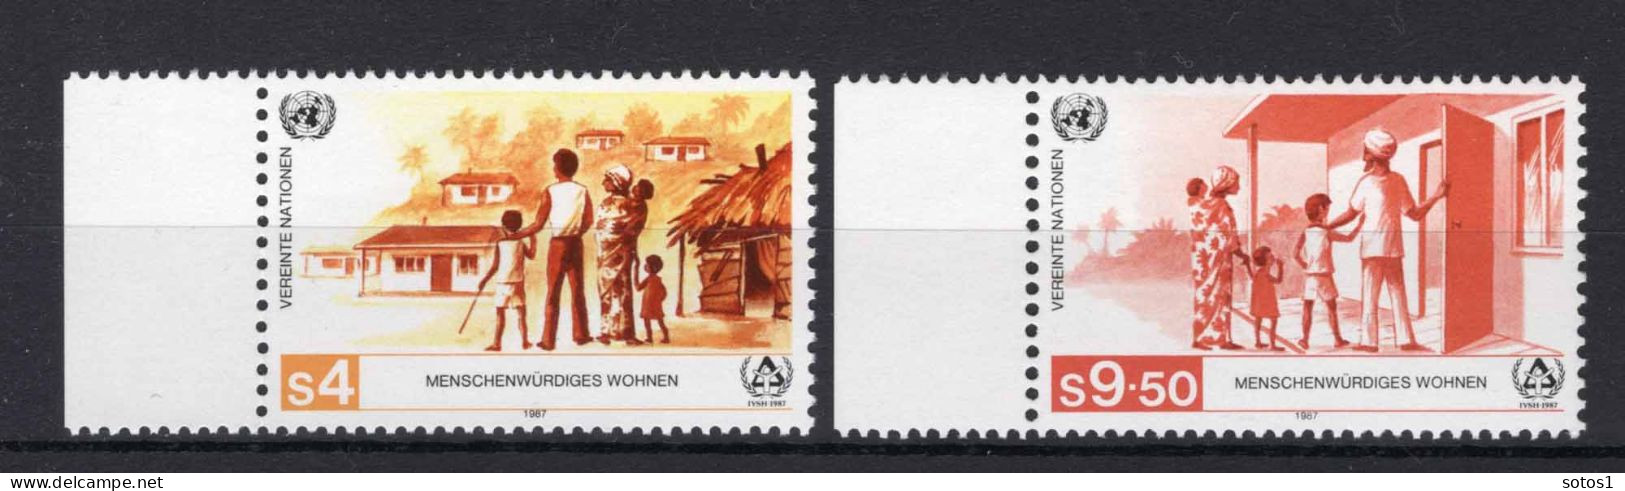 VERENIGDE NATIES-WENEN Yt. 69/70 MNH 1987 - Unused Stamps